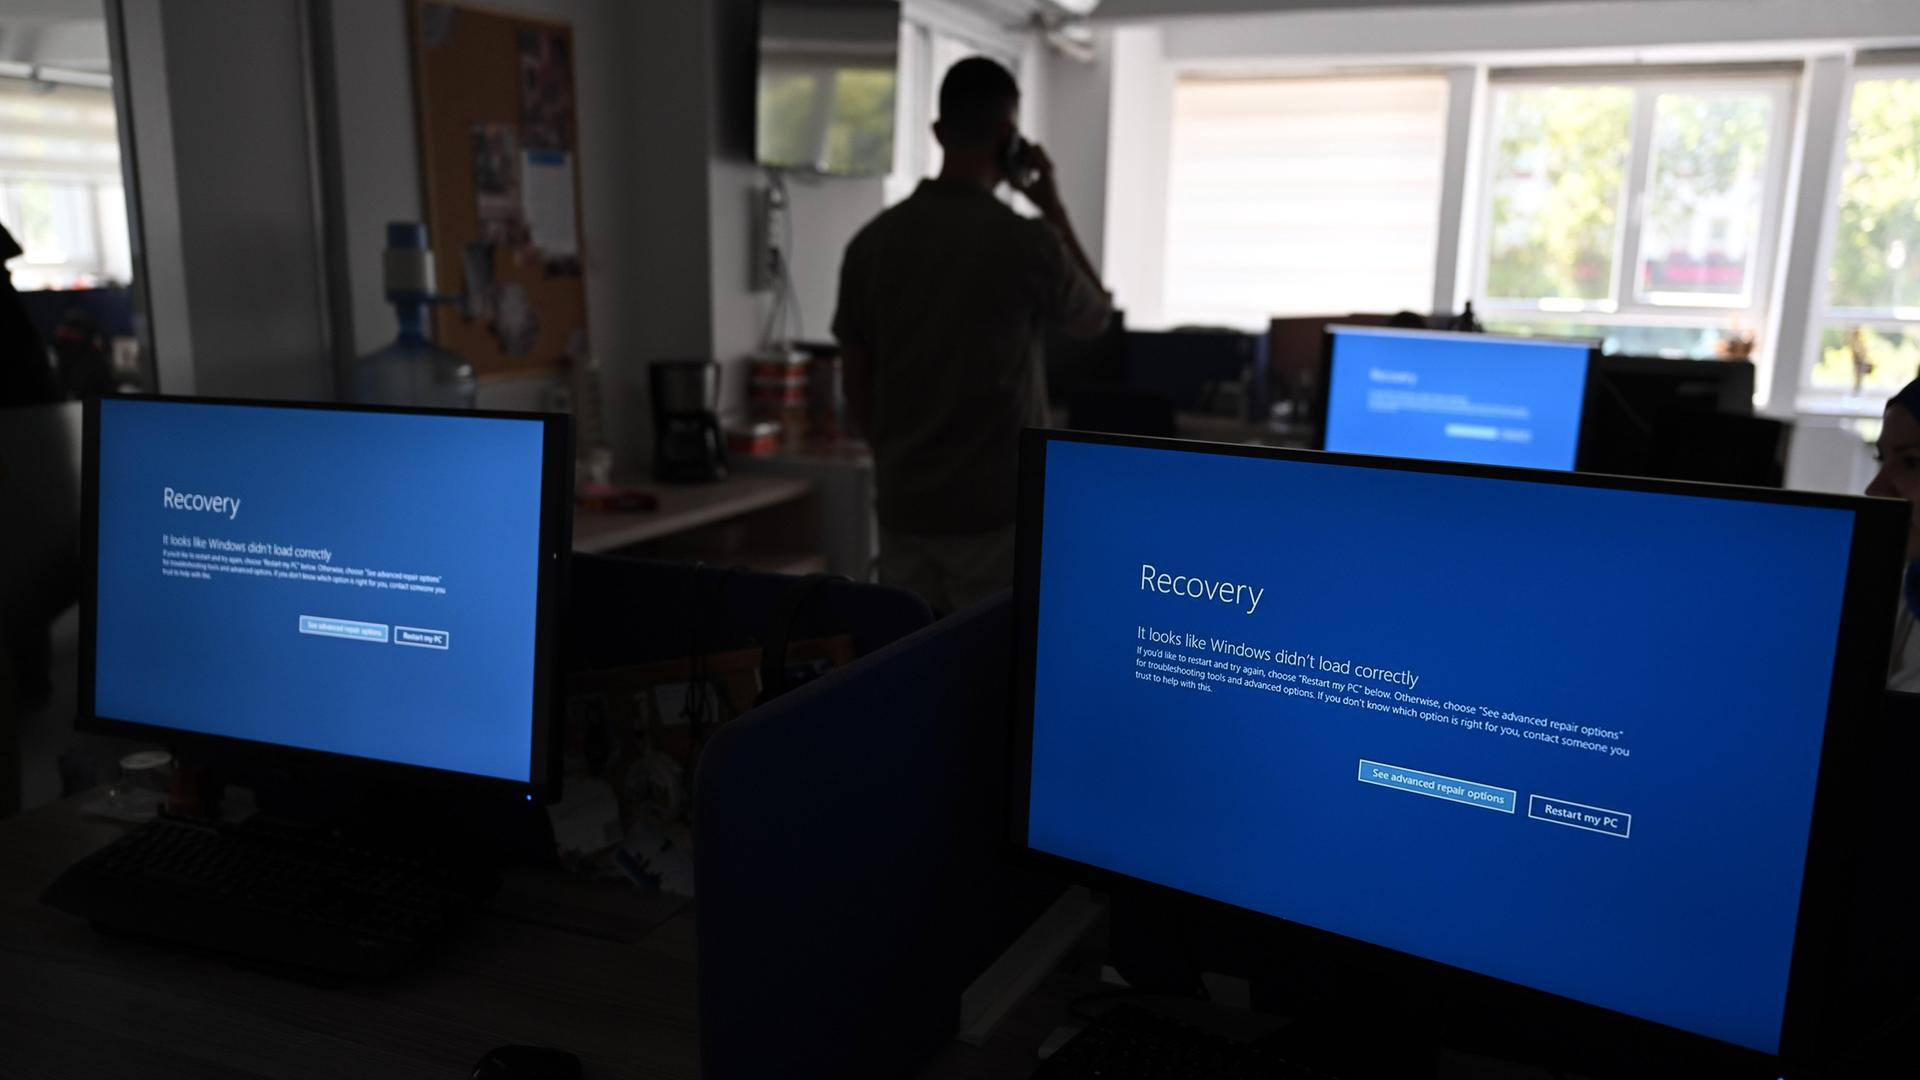 In einem Büro sind drei Monitore zu sehen, deren Display blau ist. Zudem ist zu erkennen, dass ein Mensch im dunkleren Teil des Raums steht.